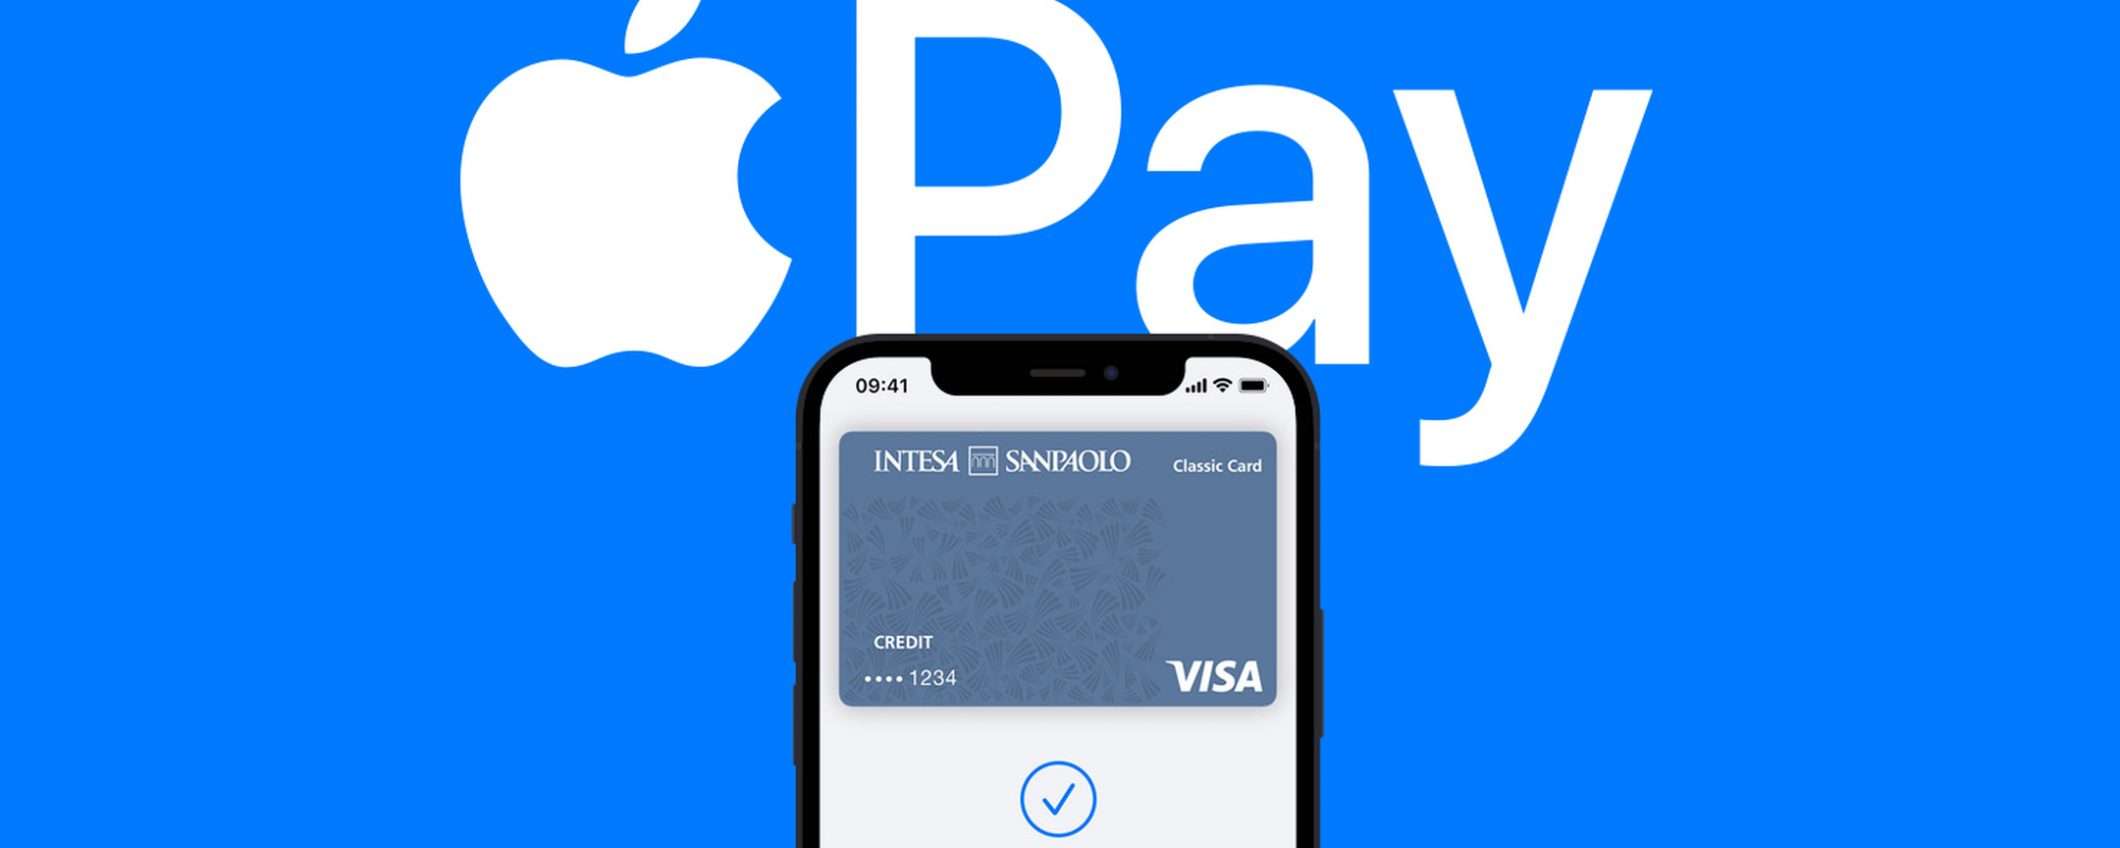 Apple Pay: impegni per evitare sanzioni dall'UE